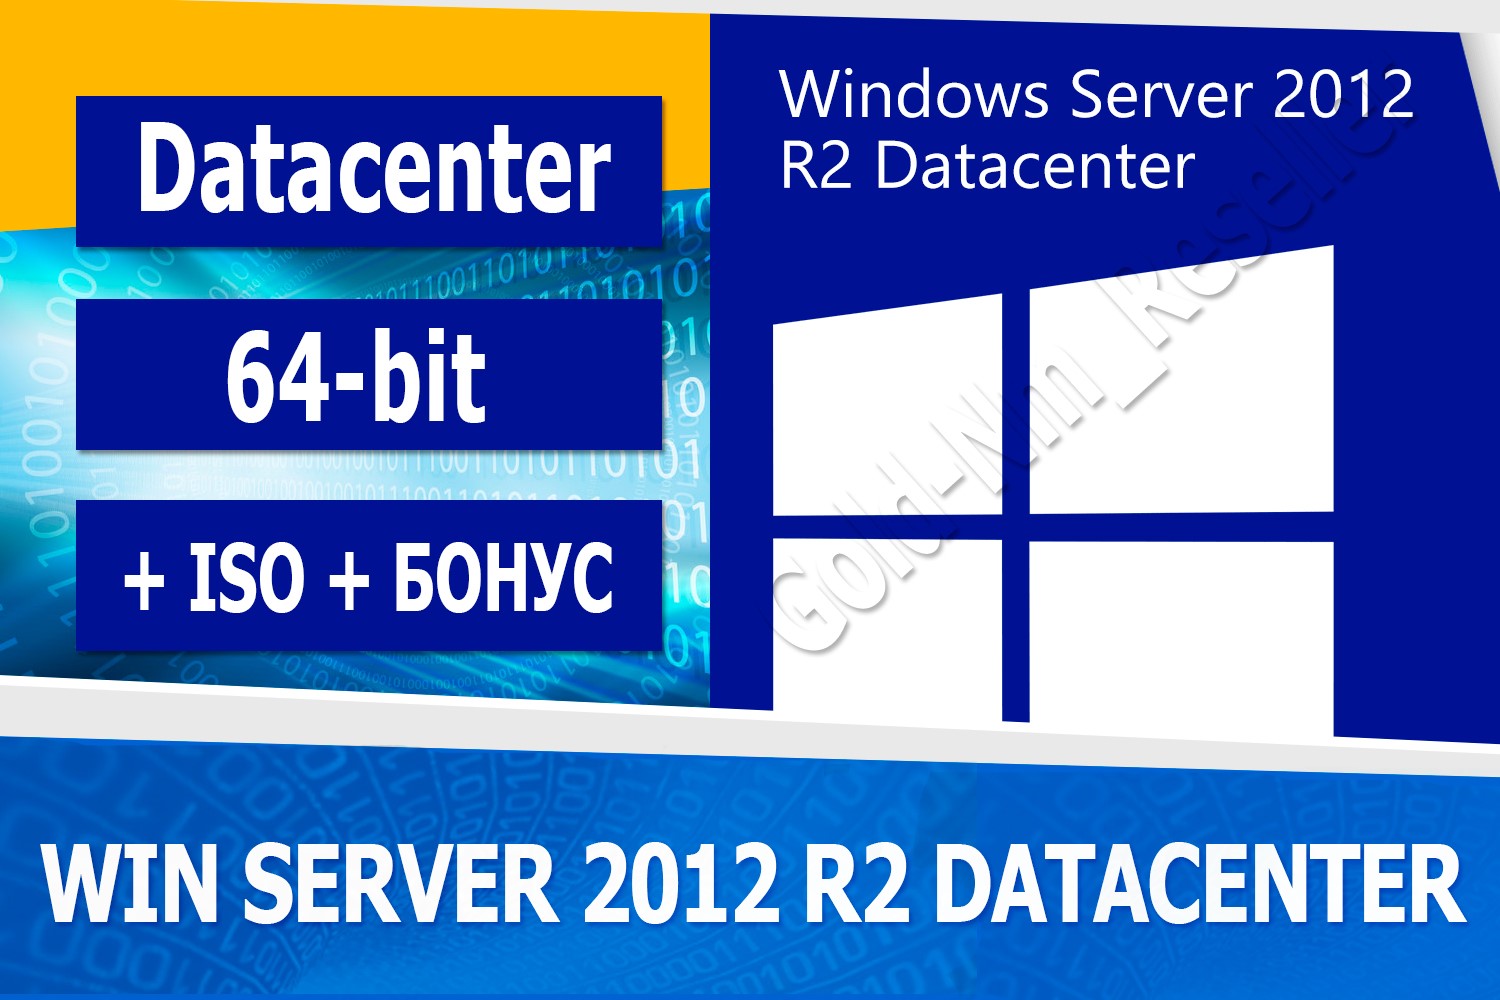 Buy Windows Server 2012 R2 Datacenter 64 Bit Iso Bonus For 697 On Gamecone 1801